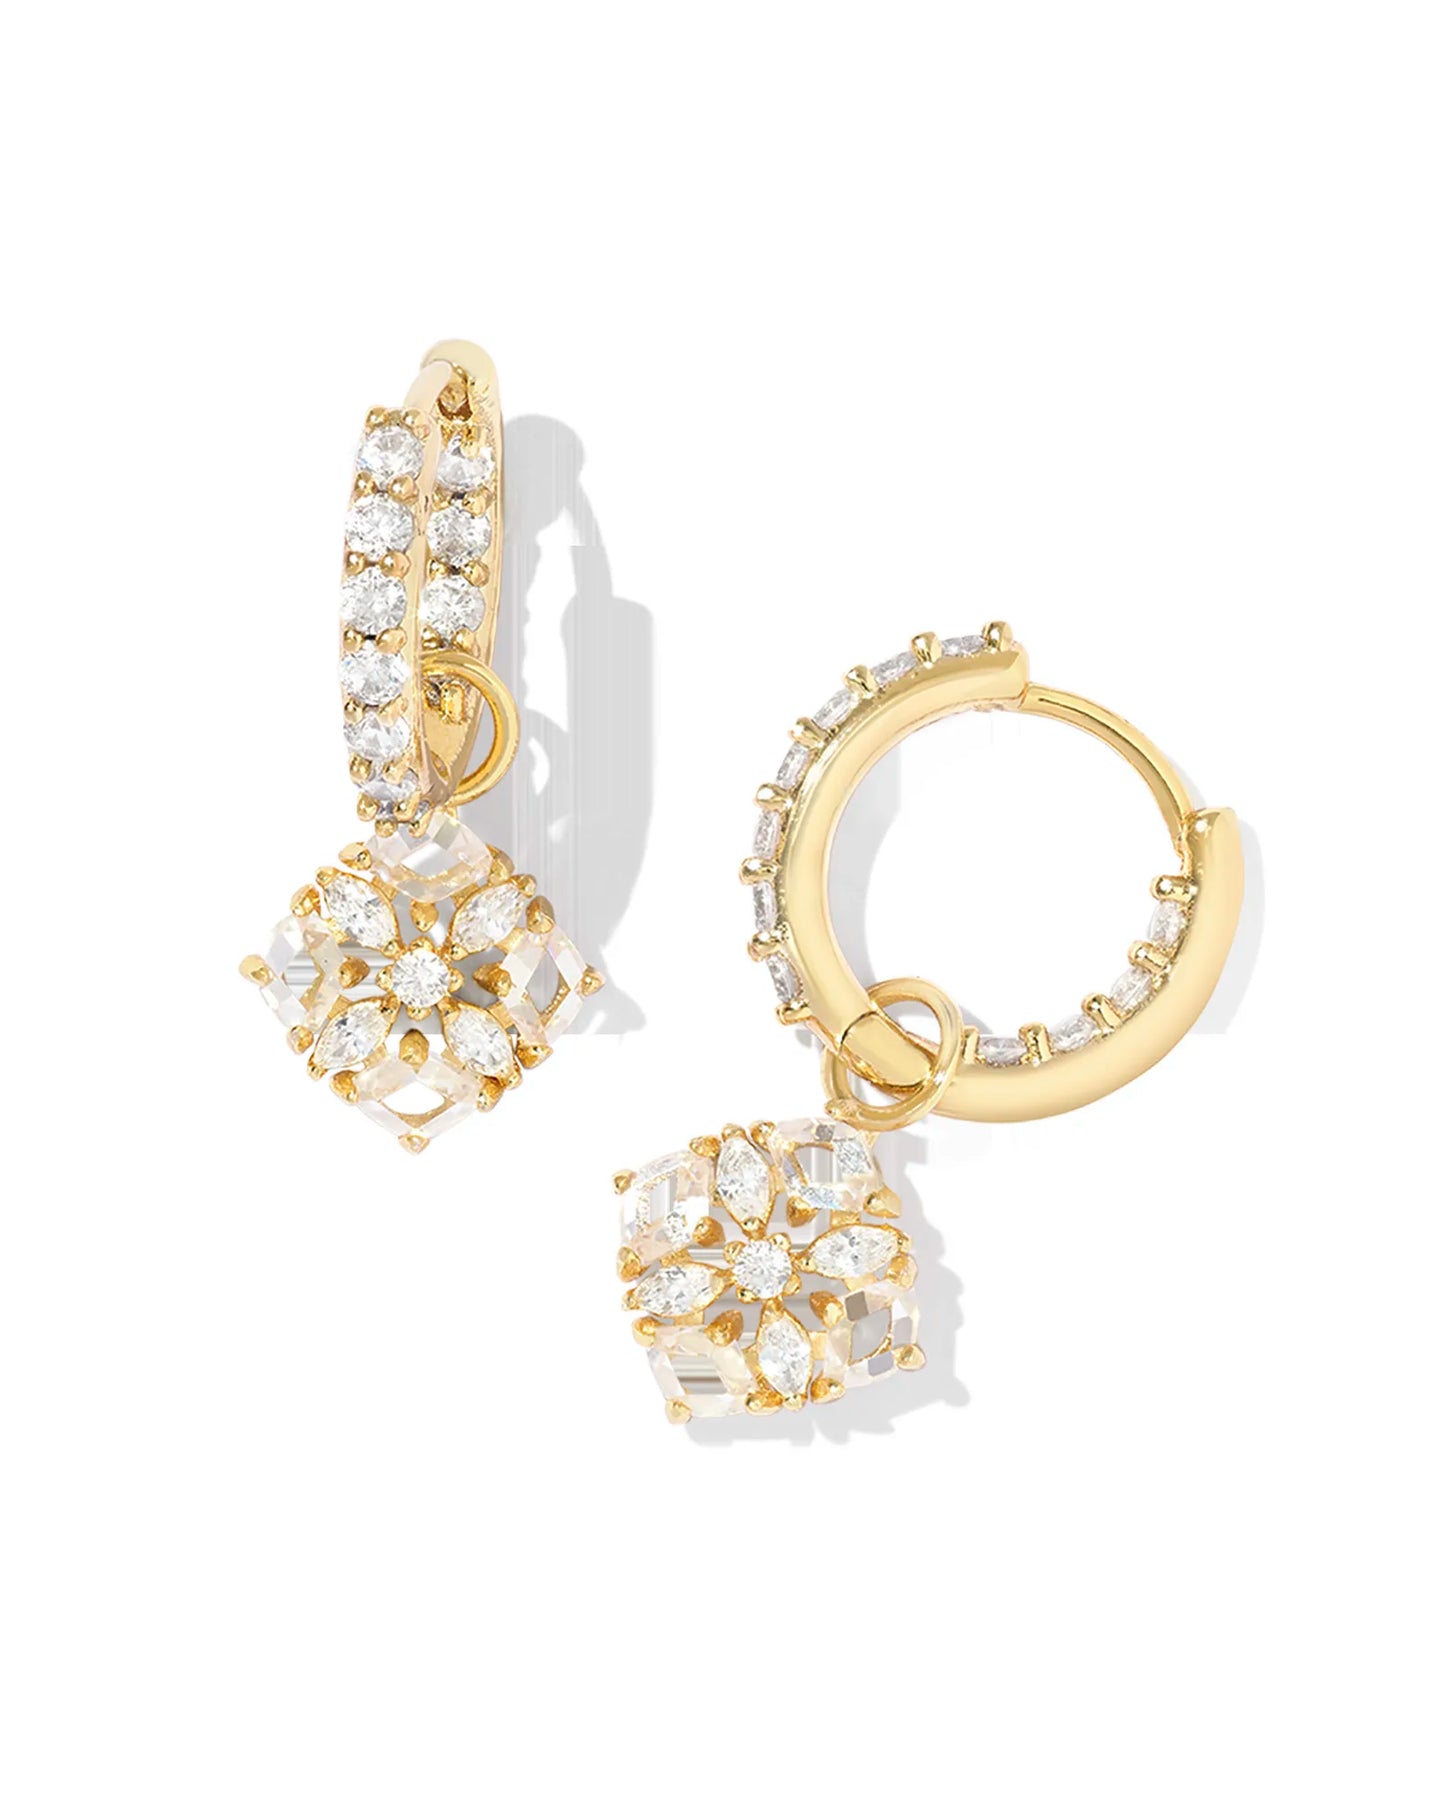 Kendra Scott Dira Crystal Huggie Earrings Gold White Crystal-Earrings-Kendra Scott-E00429GLD-The Twisted Chandelier